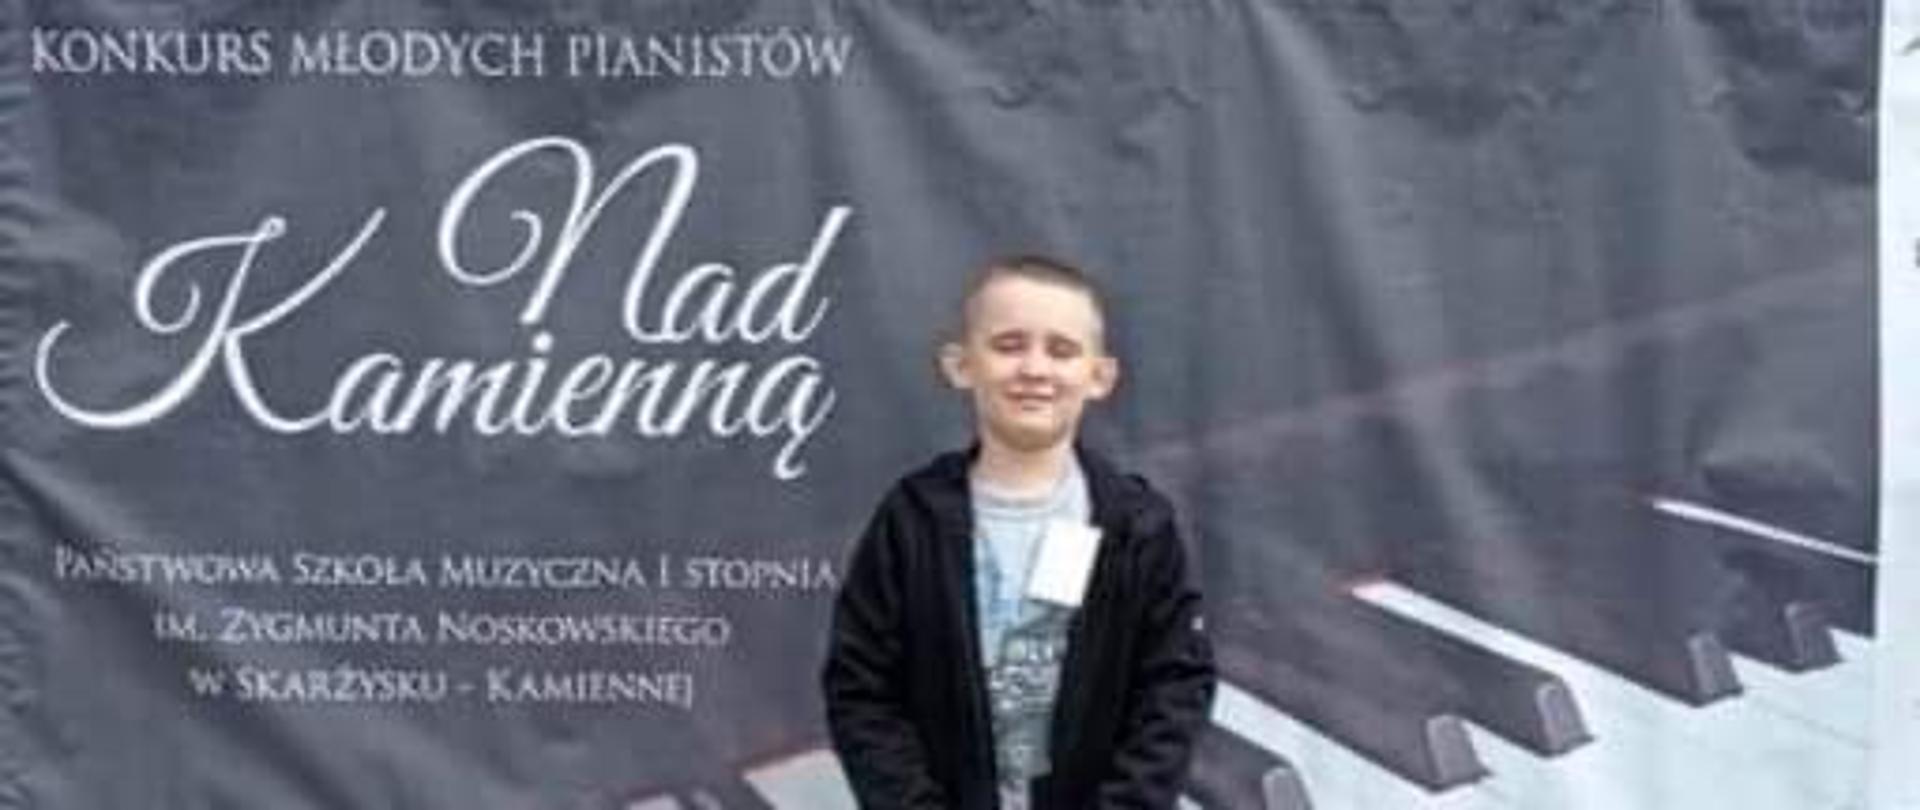 Chłopiec stoi na tle baneru z napisem Konkurs Młodych Pianistów "Nad Kamienną".